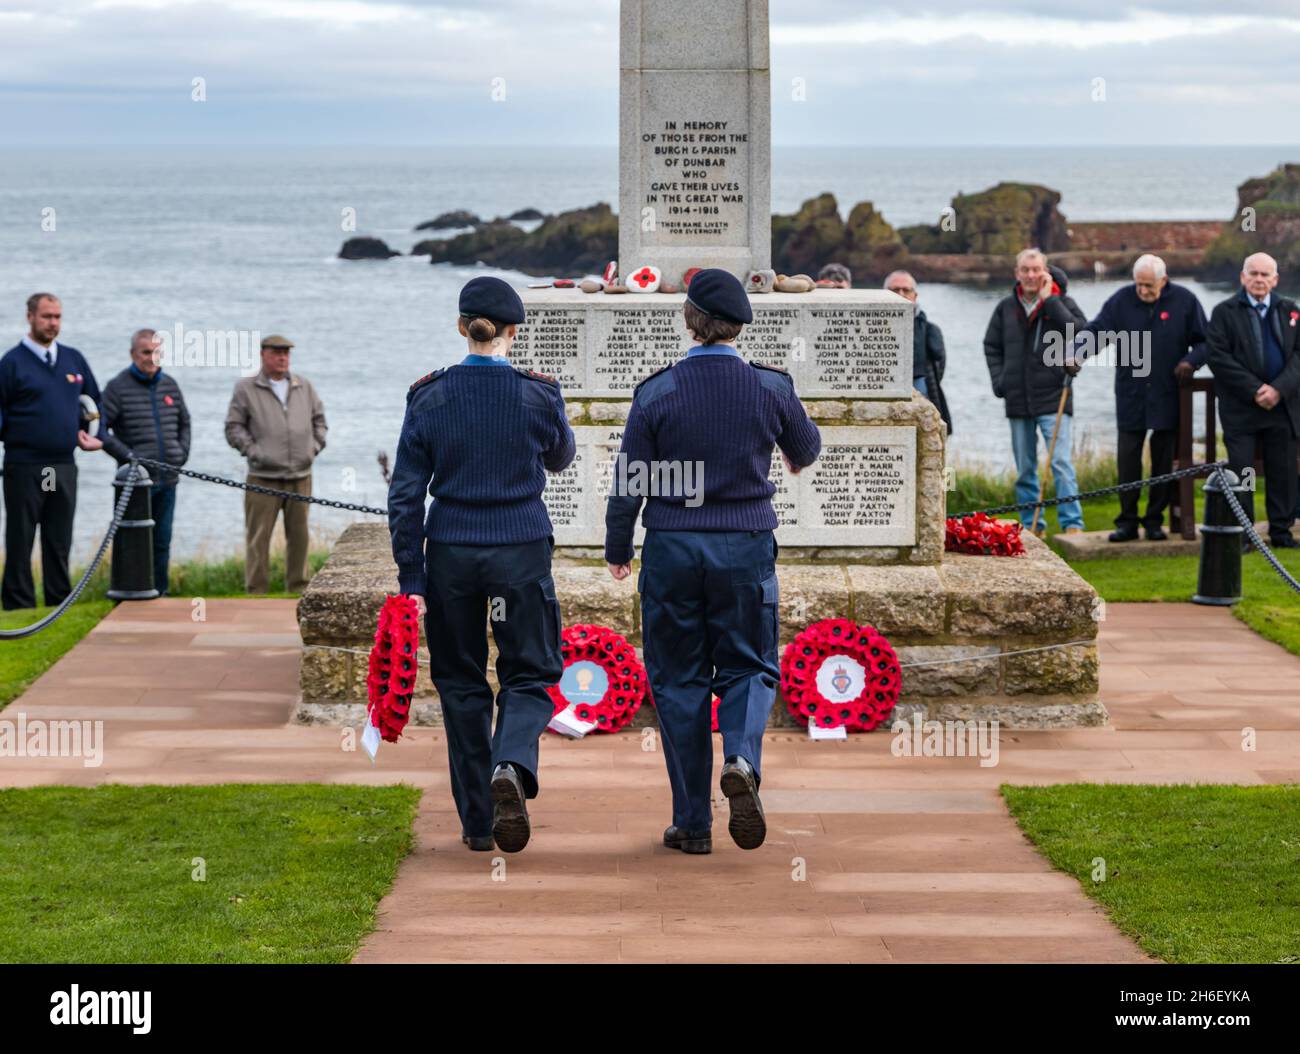 Cadets posant une couronne de pavot au mémorial de guerre lors de la cérémonie du jour du souvenir, Dunbar, East Lothian, Écosse, Royaume-Uni Banque D'Images